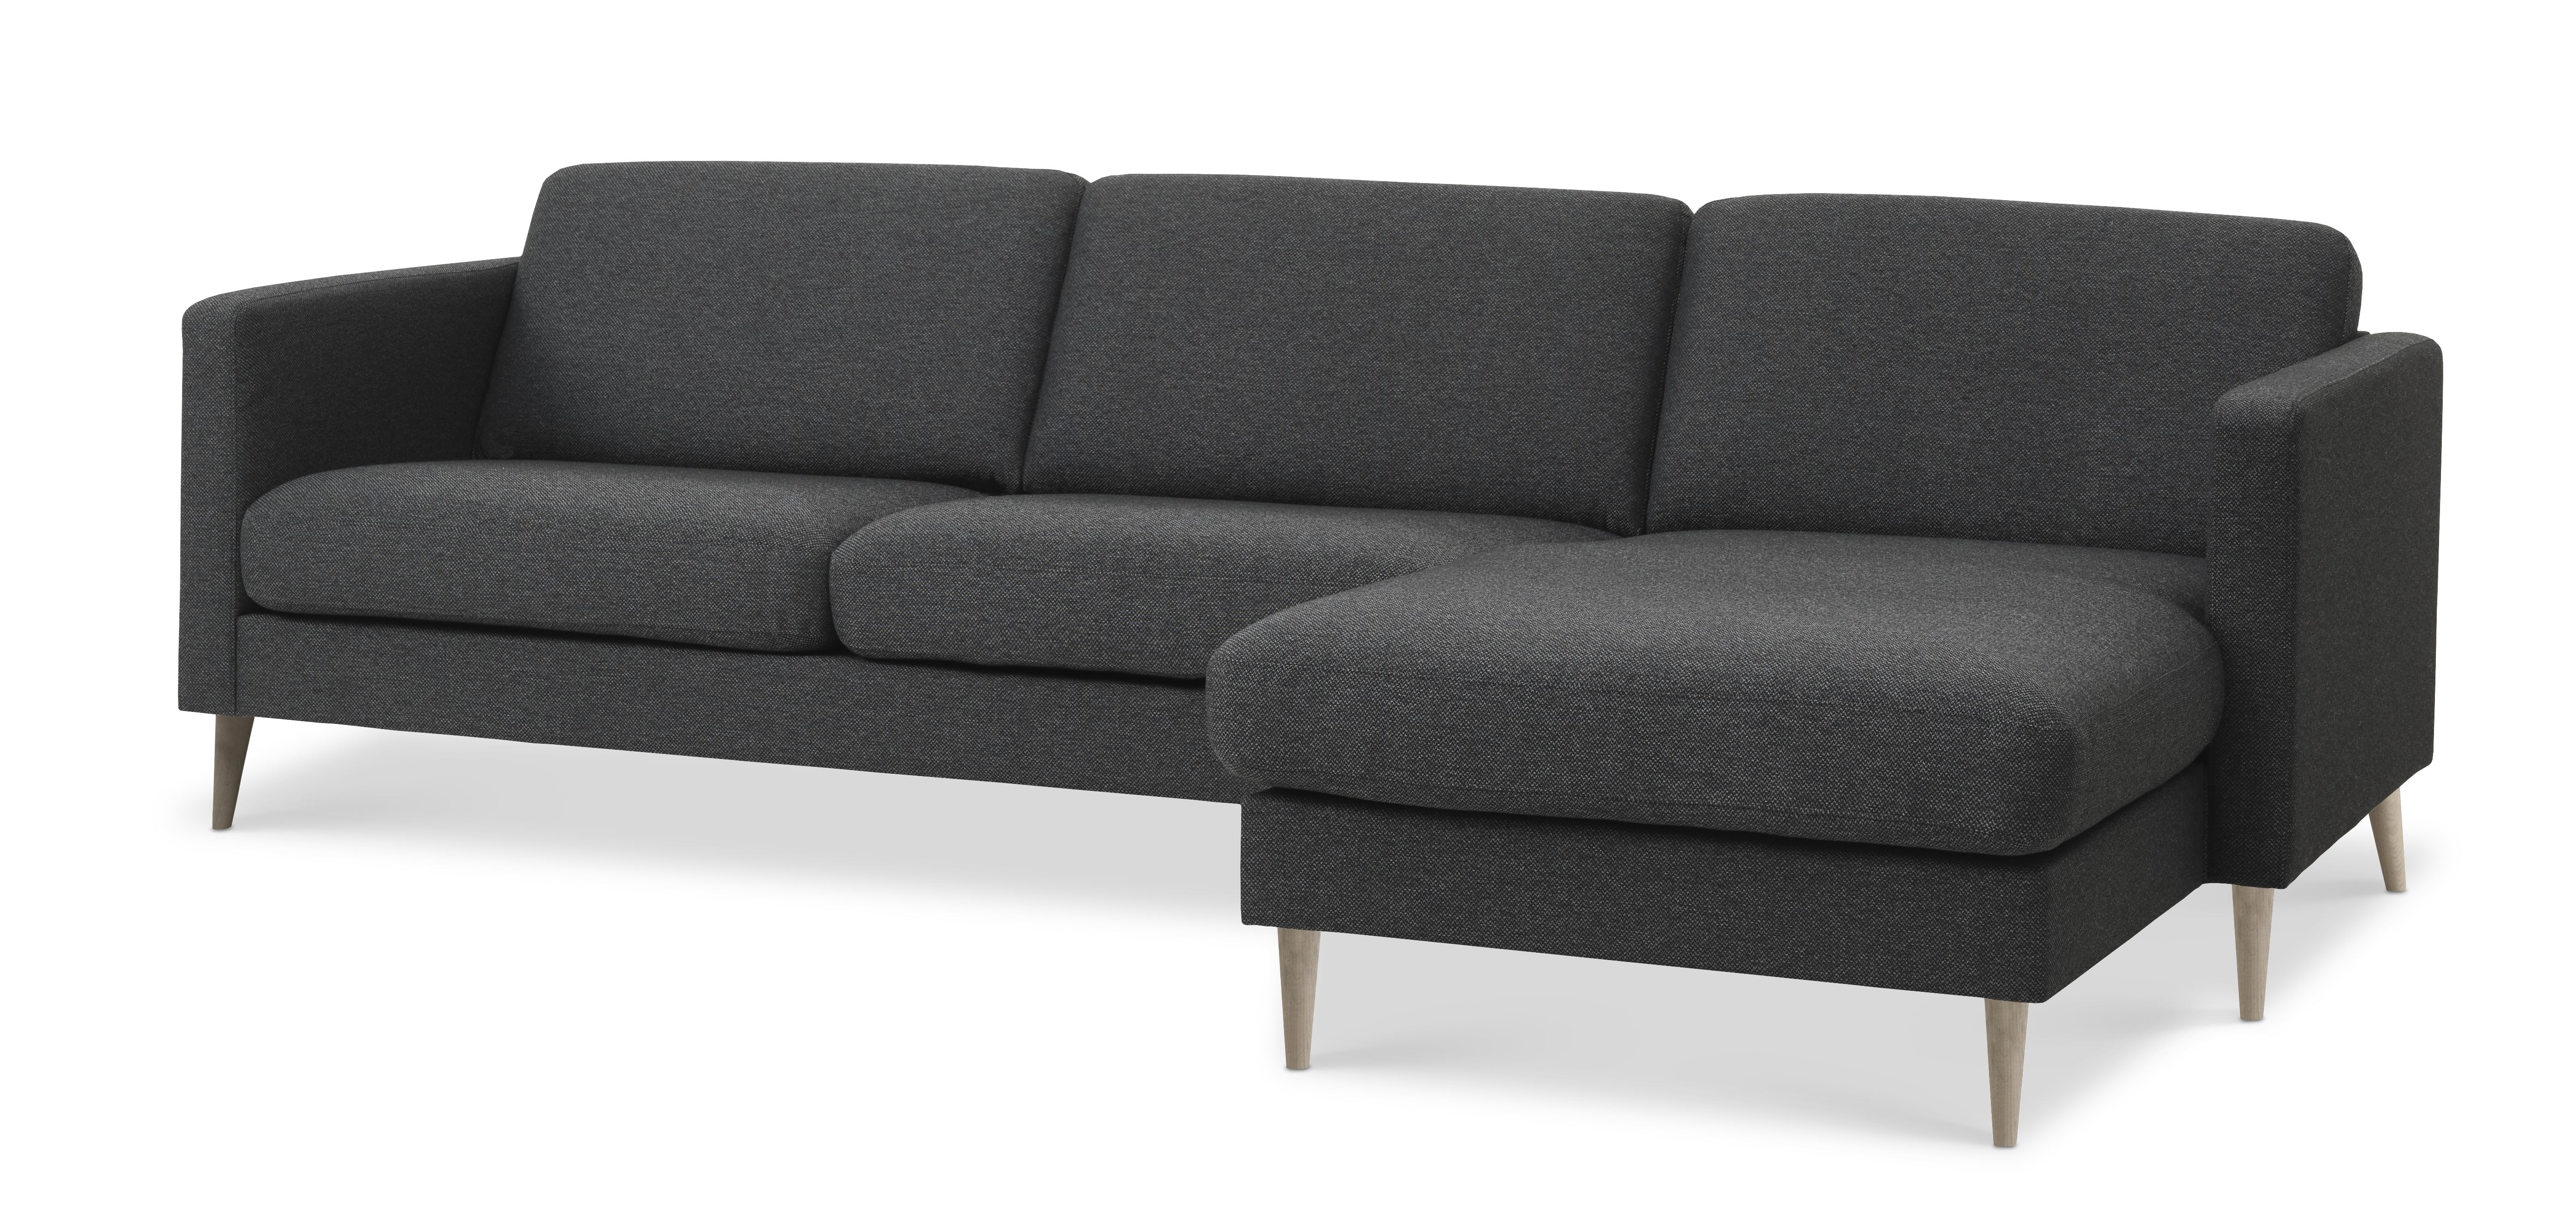 Billede af Ask 51 3D sofa, m. chaiselong - antracitgrå polyester stof og natur træ